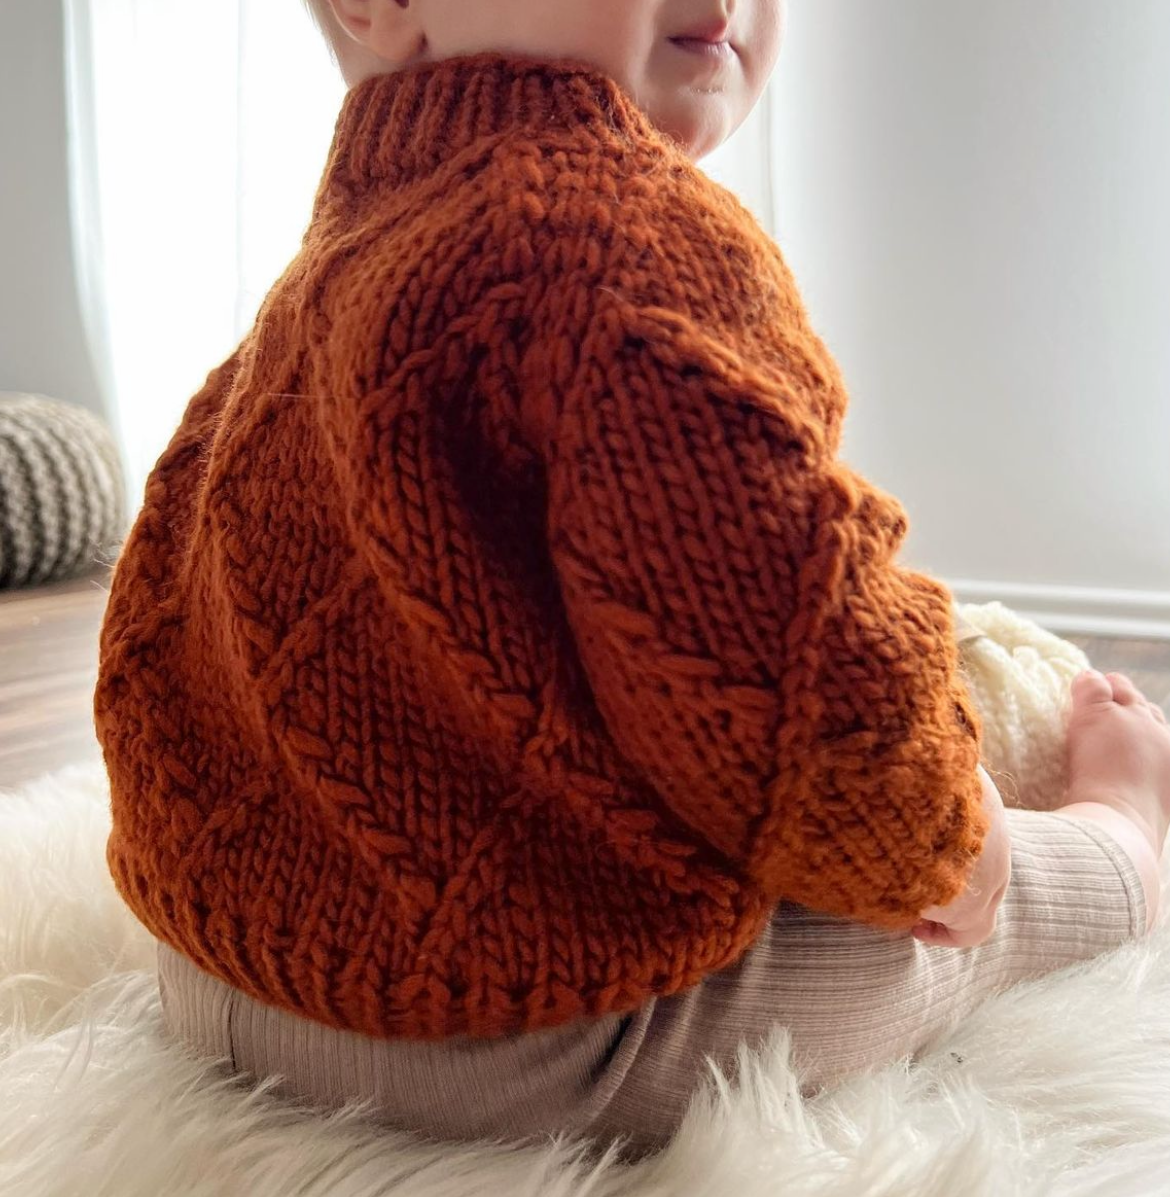 Inverno Sweater Kids Edition - knitting pattern by TheKnitStitch